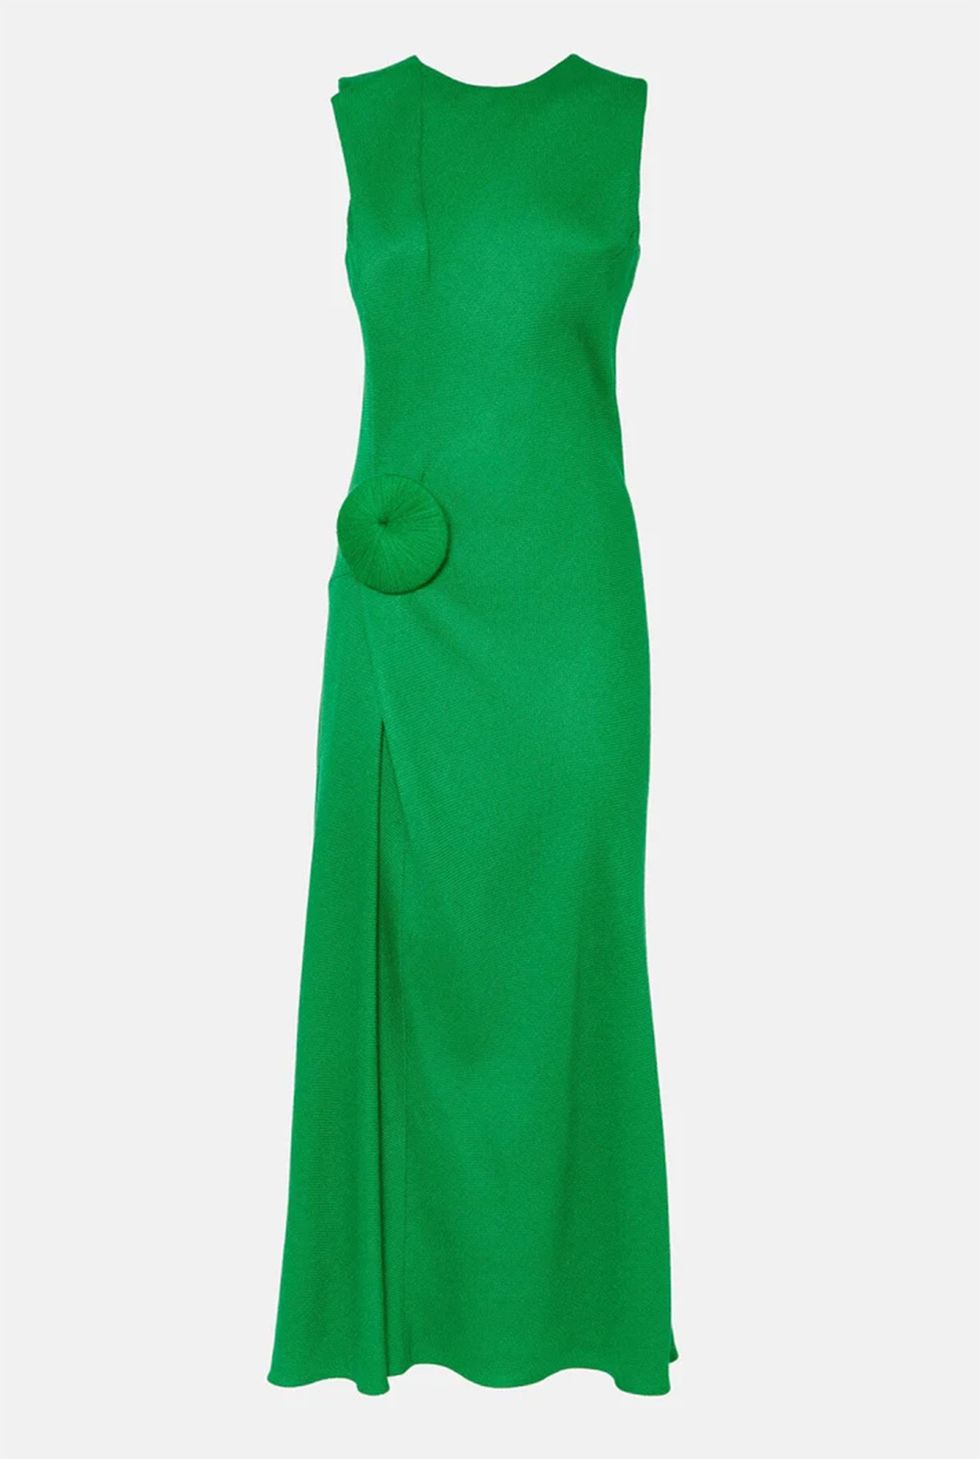 vestido verde de vevota  lomba que sofía palazuelo ha llevado en la boda de almeida y teresa urquijo